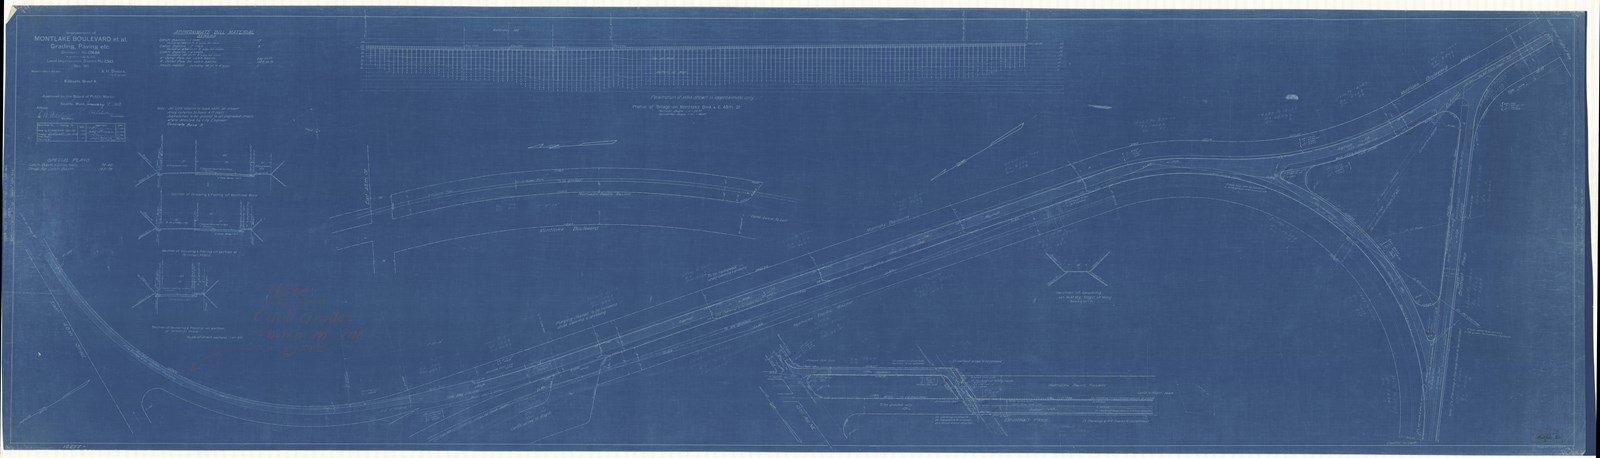 Blueprint of curving road